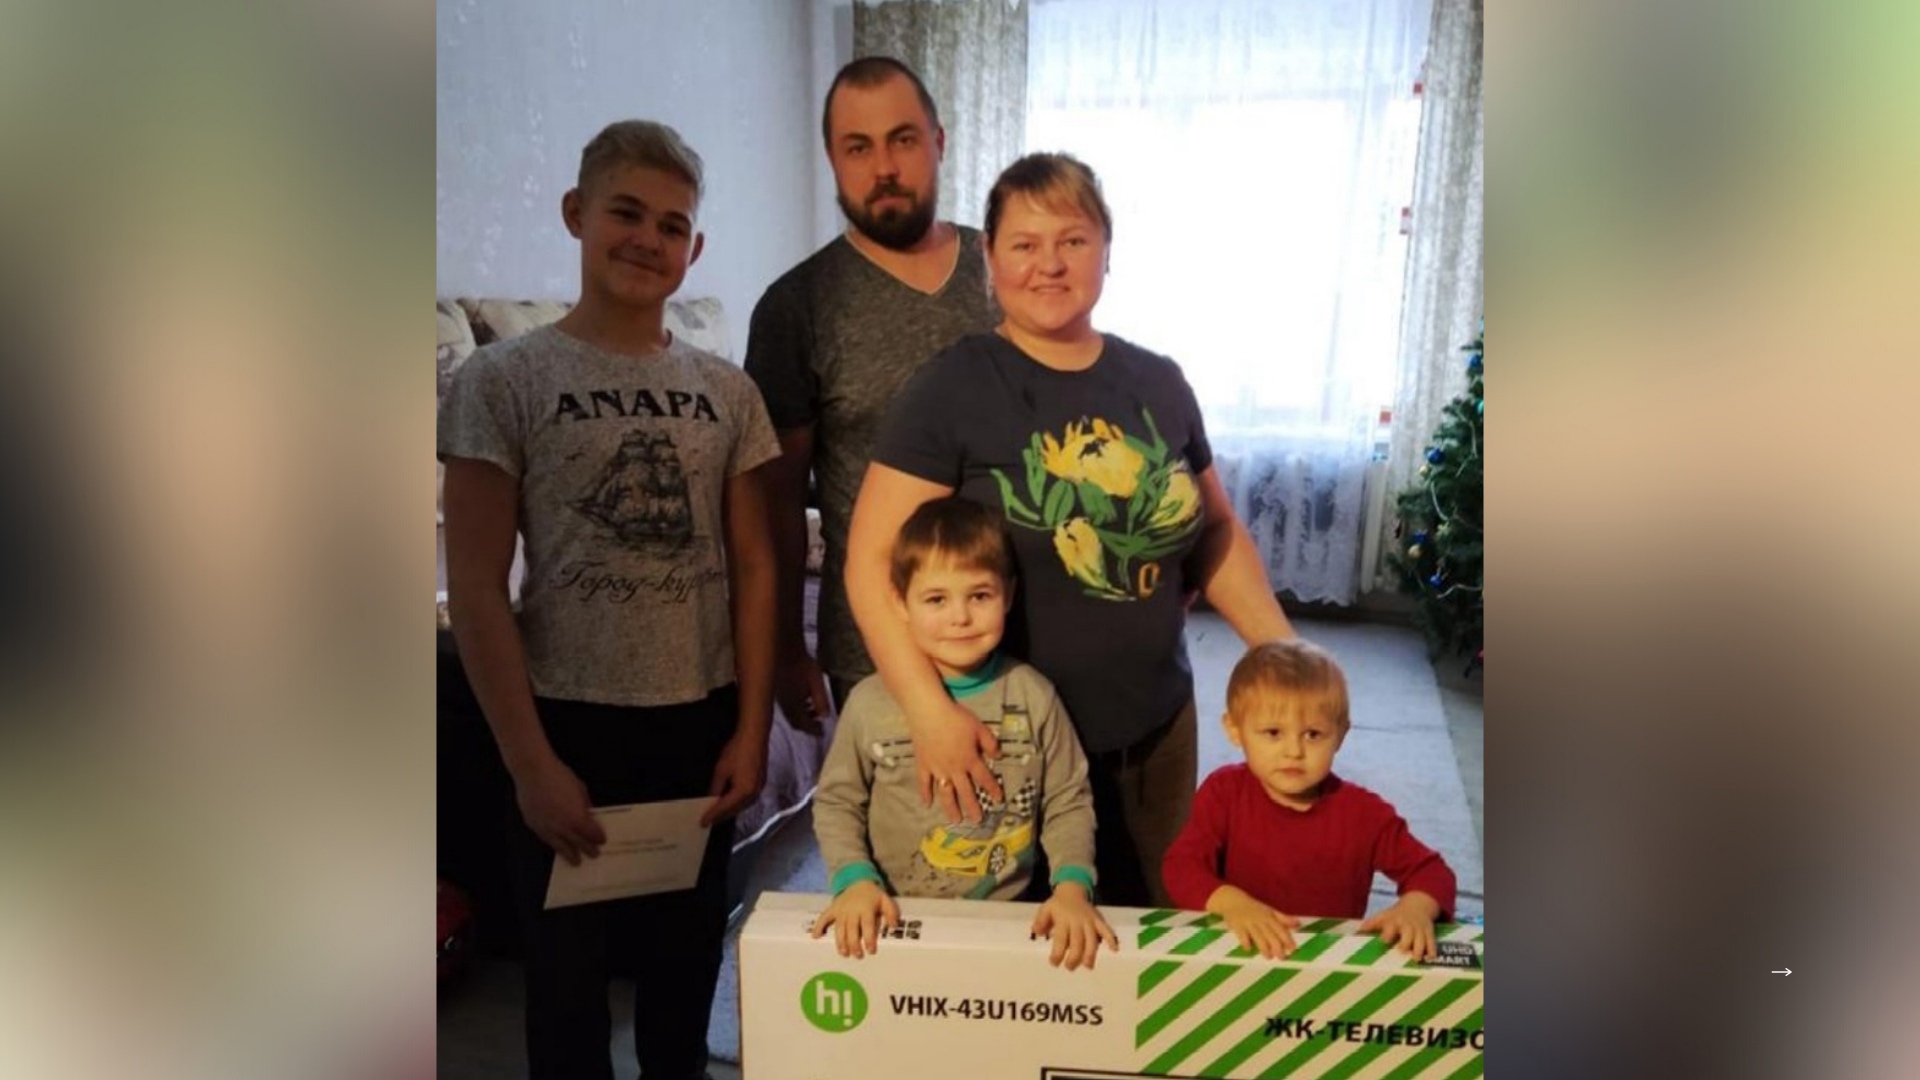 "Даже не поверили": экс-губернатор Миронов поздравил детей-инвалидов в Ярославле